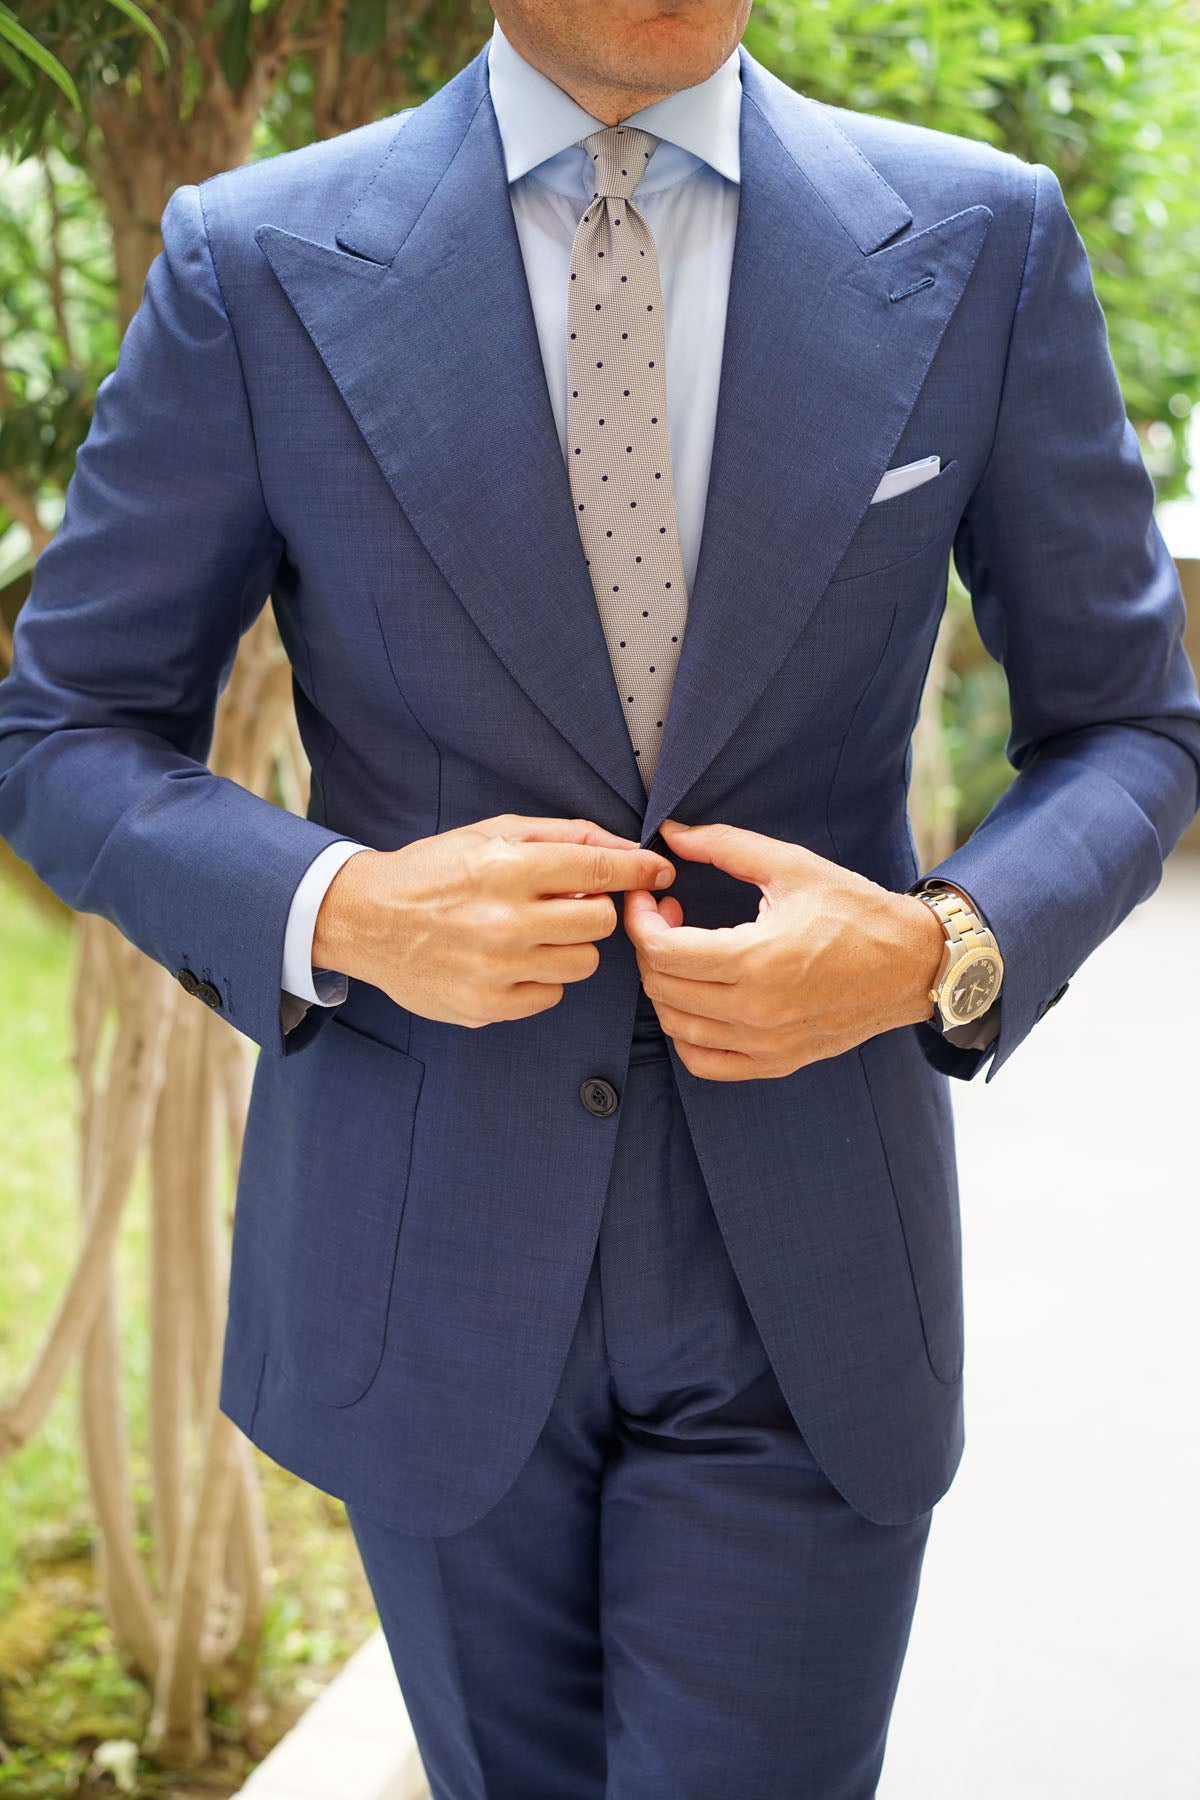 Grey with Navy Blue Polka Dots - Skinny Tie | Men's Business Slim Ties ...